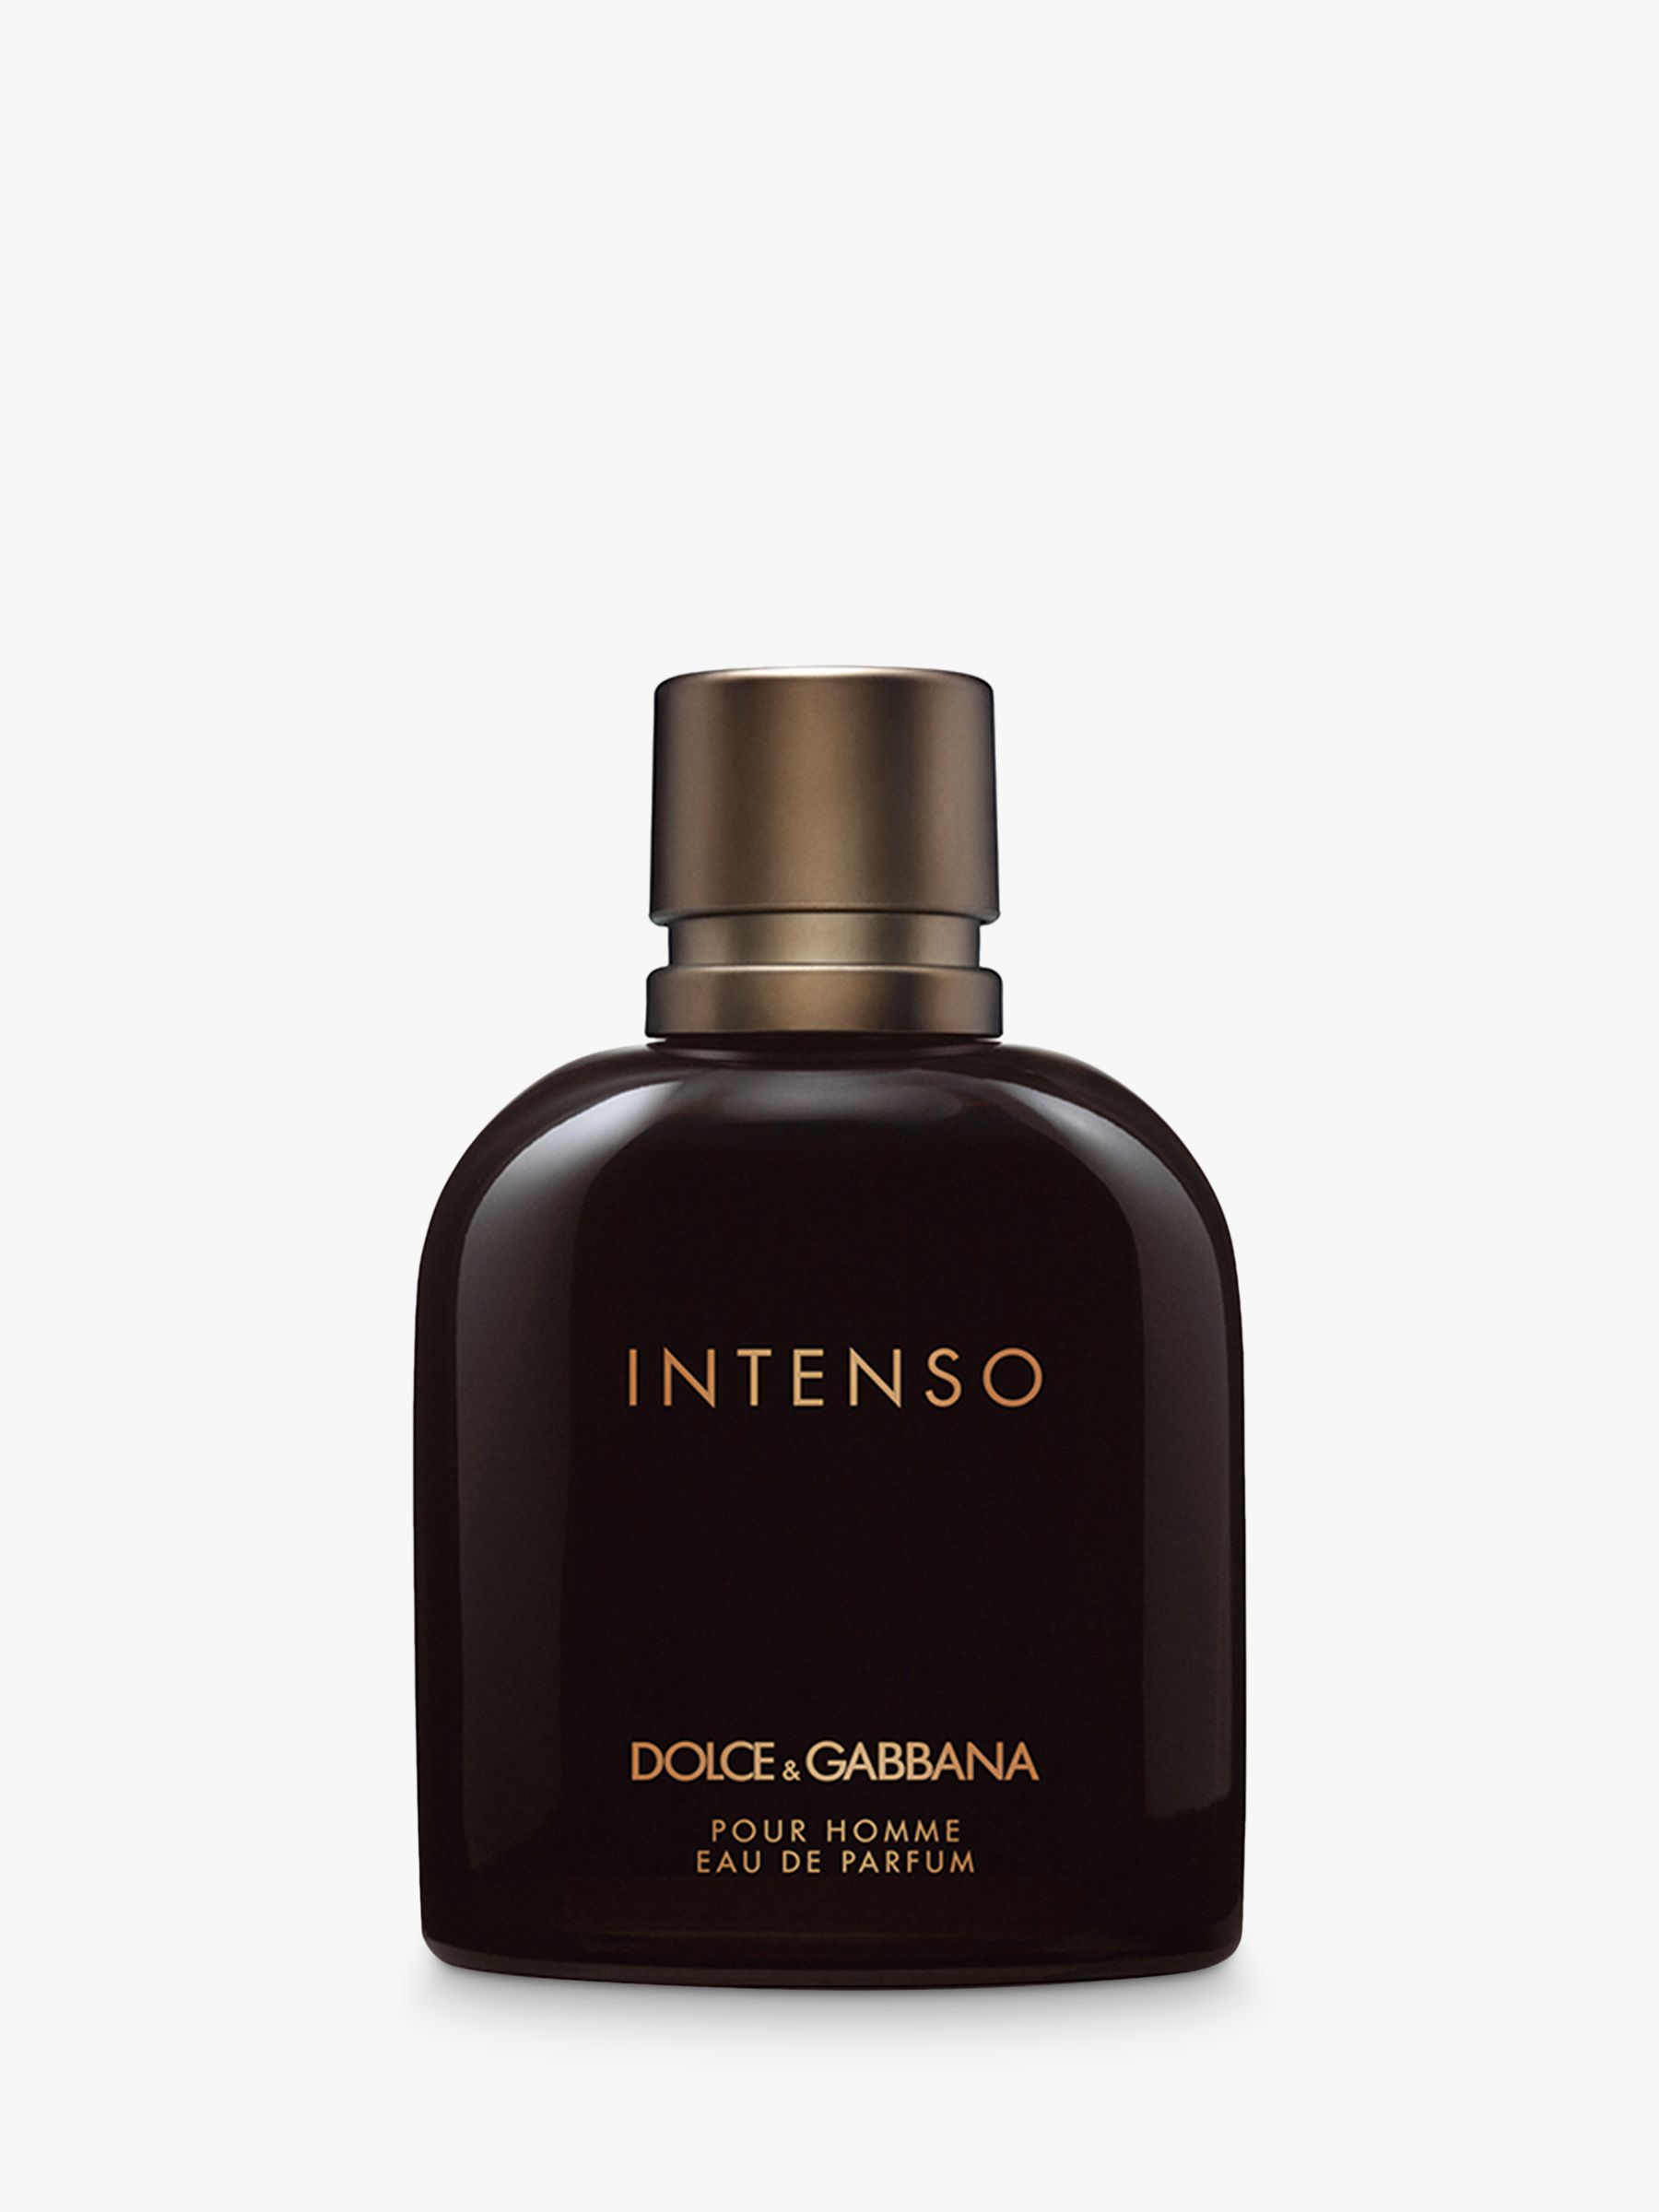 Dolce & Gabbana Intenso Pour Homme Eau de Parfum, 100ml